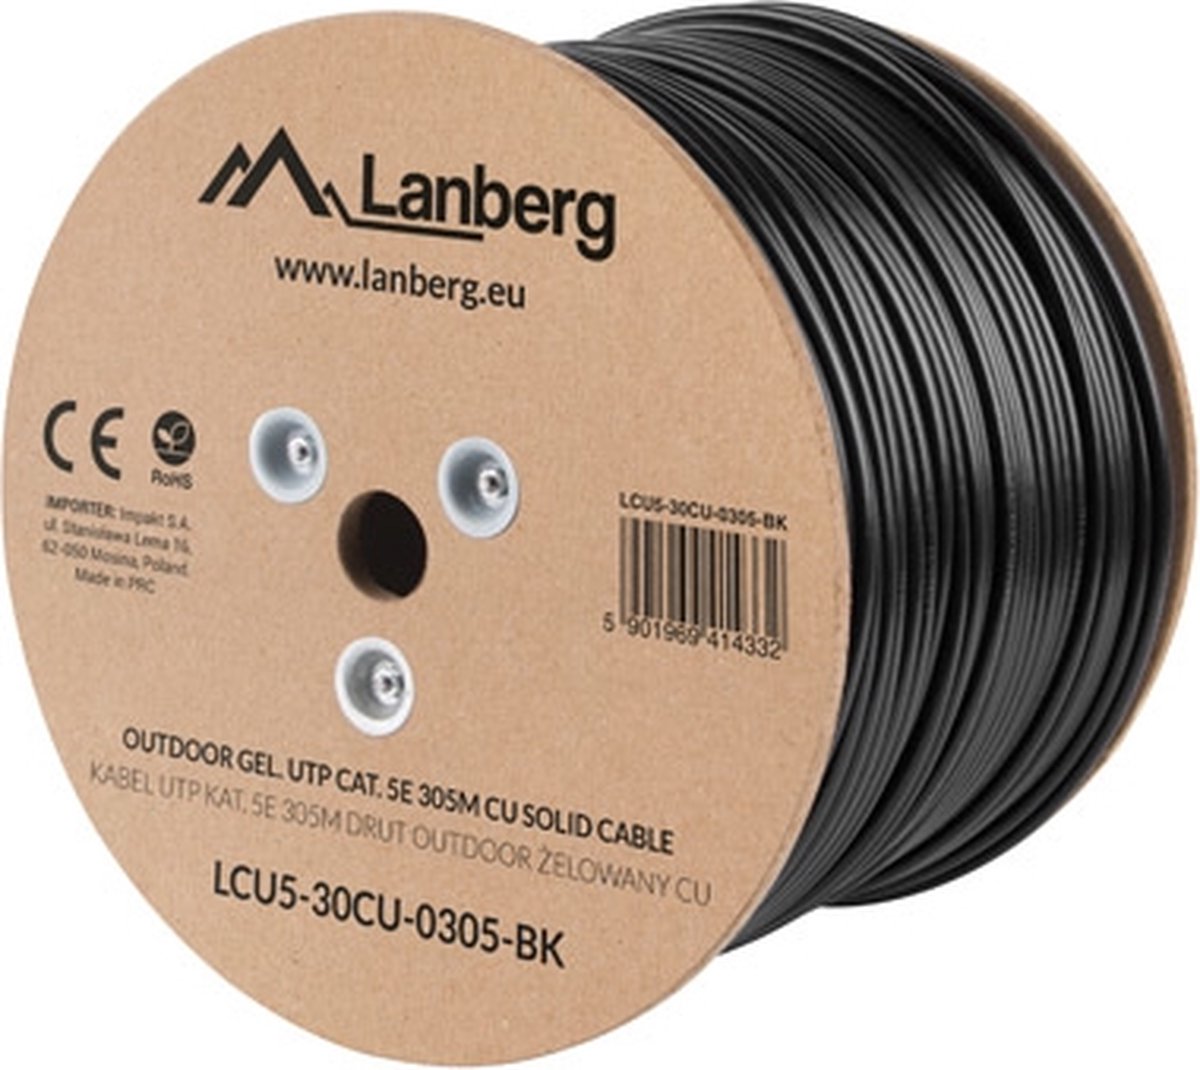 Bobina DE Cable para Exterior LANBERG LCU5-30CU-0305-BK - RJ45 - CAT 5E - UTP - AWG24-305M - black - Gel - Lanberg